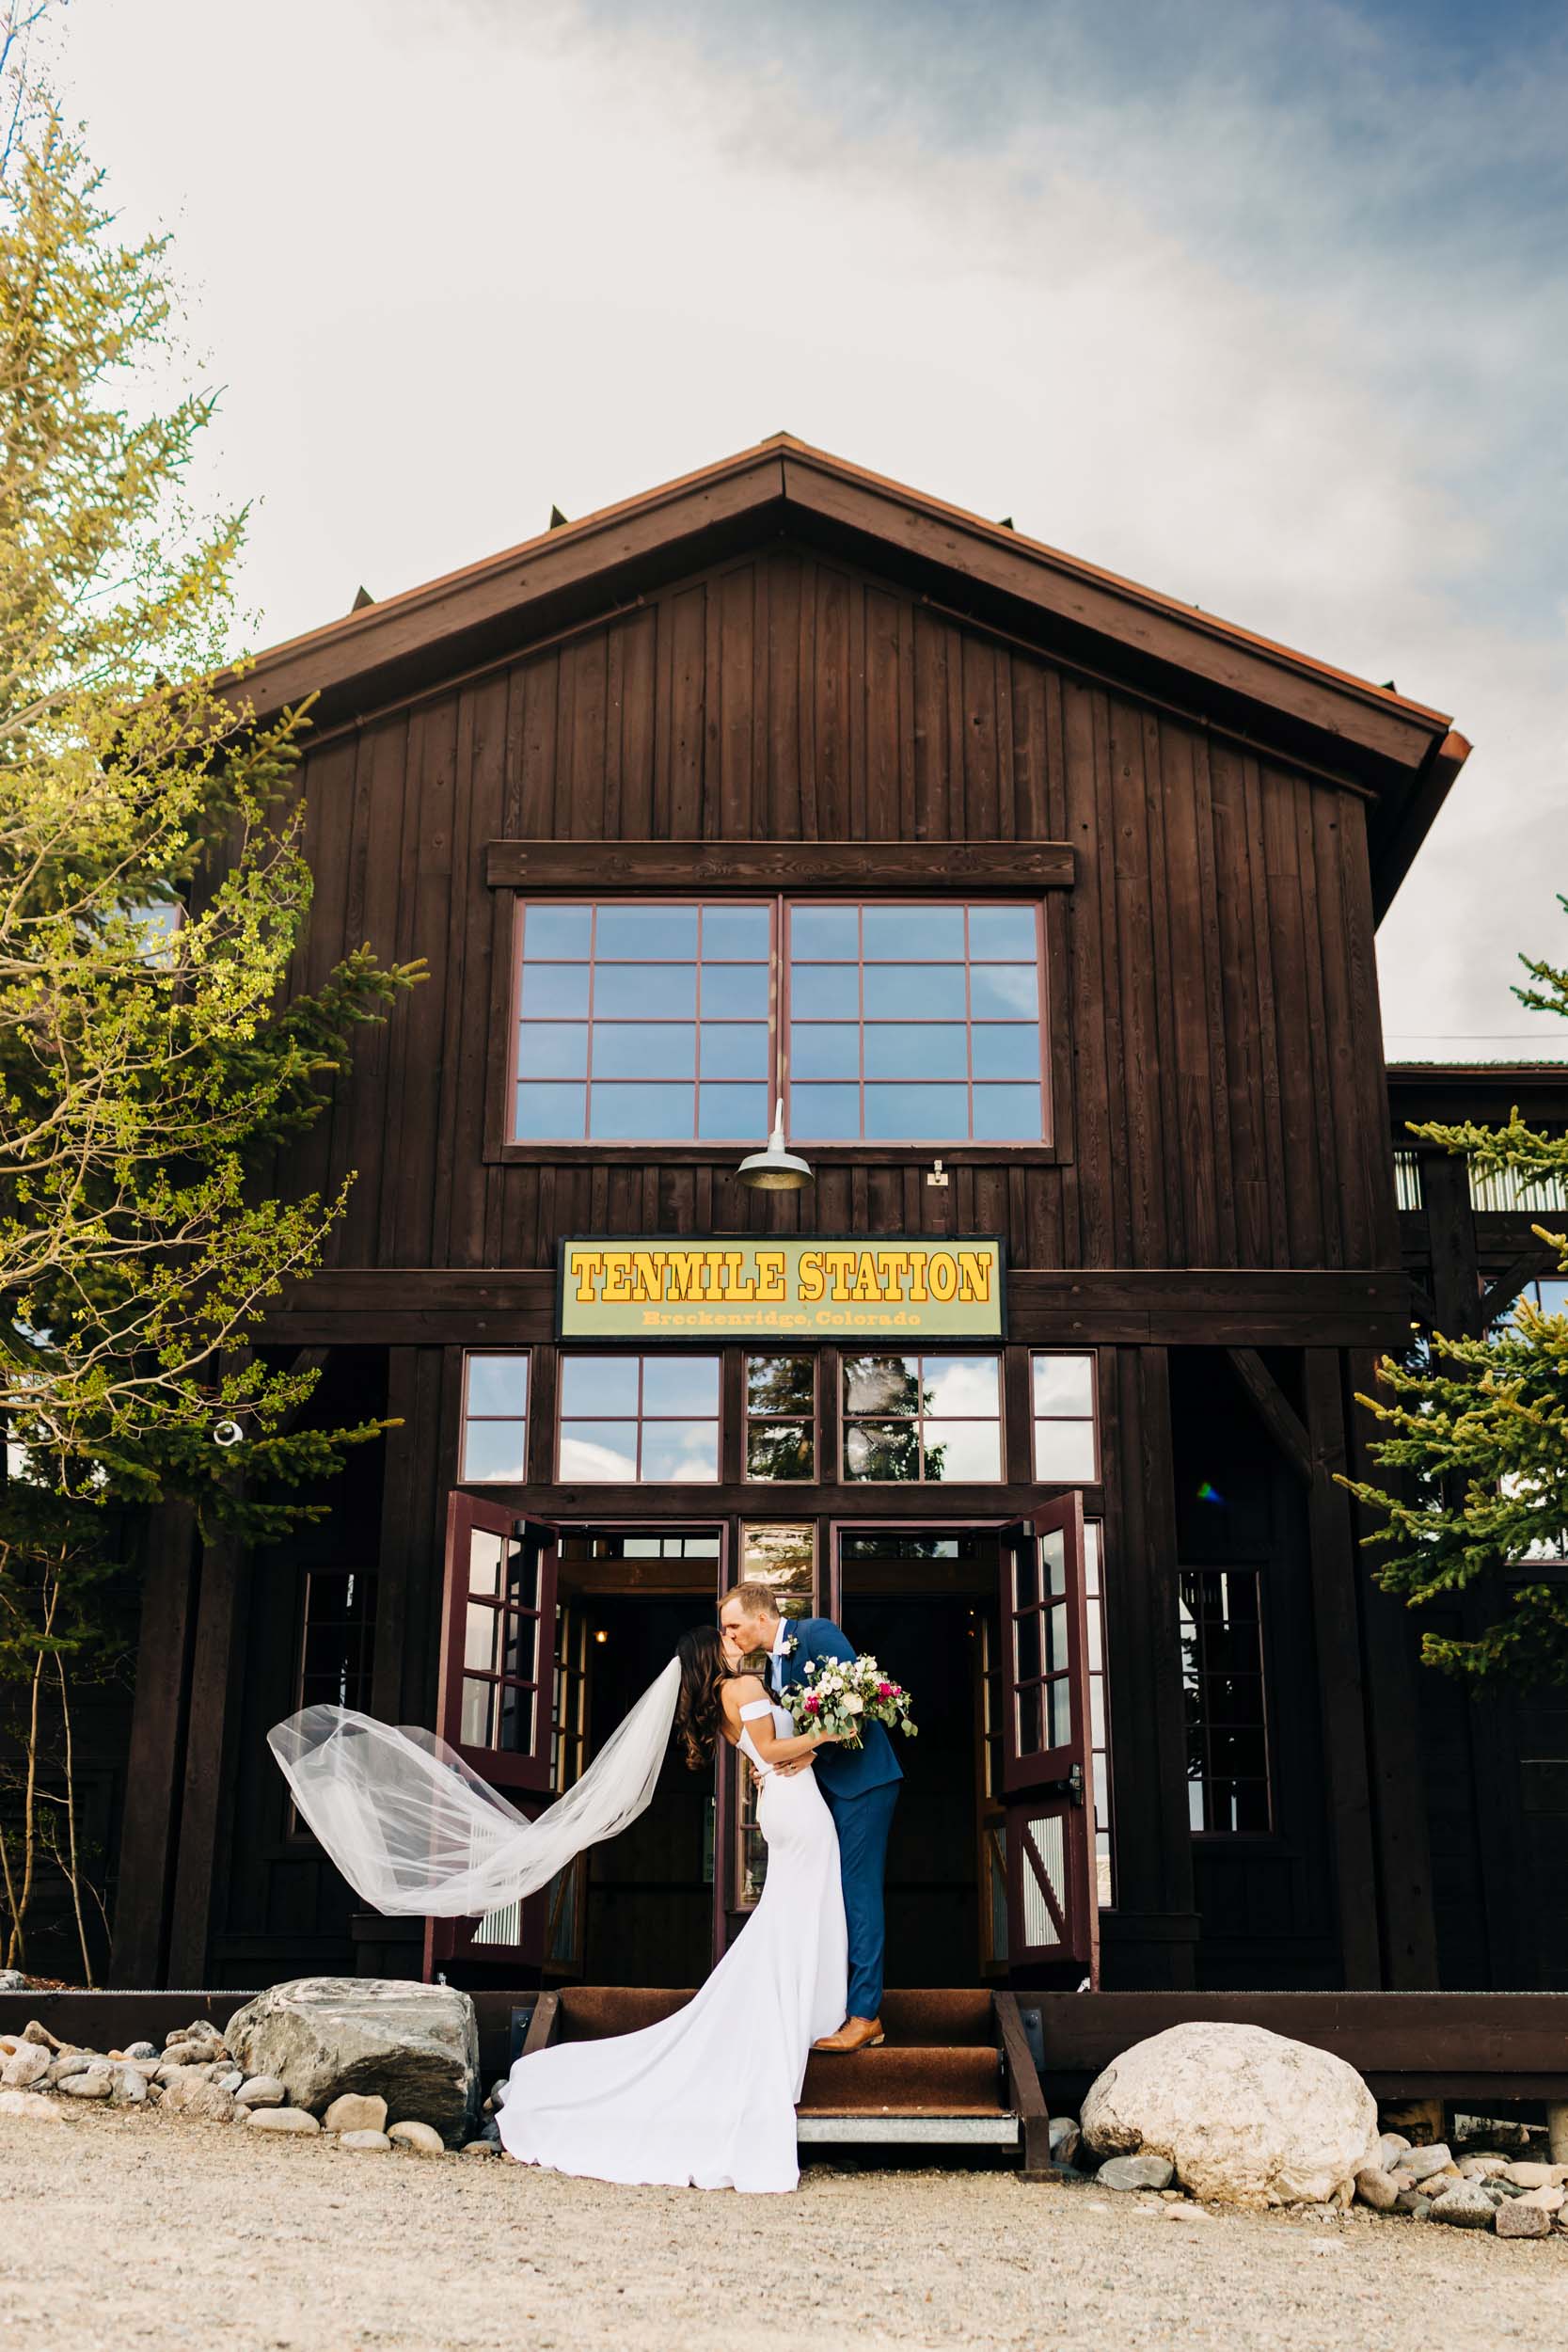 Ten Mile Station wedding photo in Breckenridge Colorado